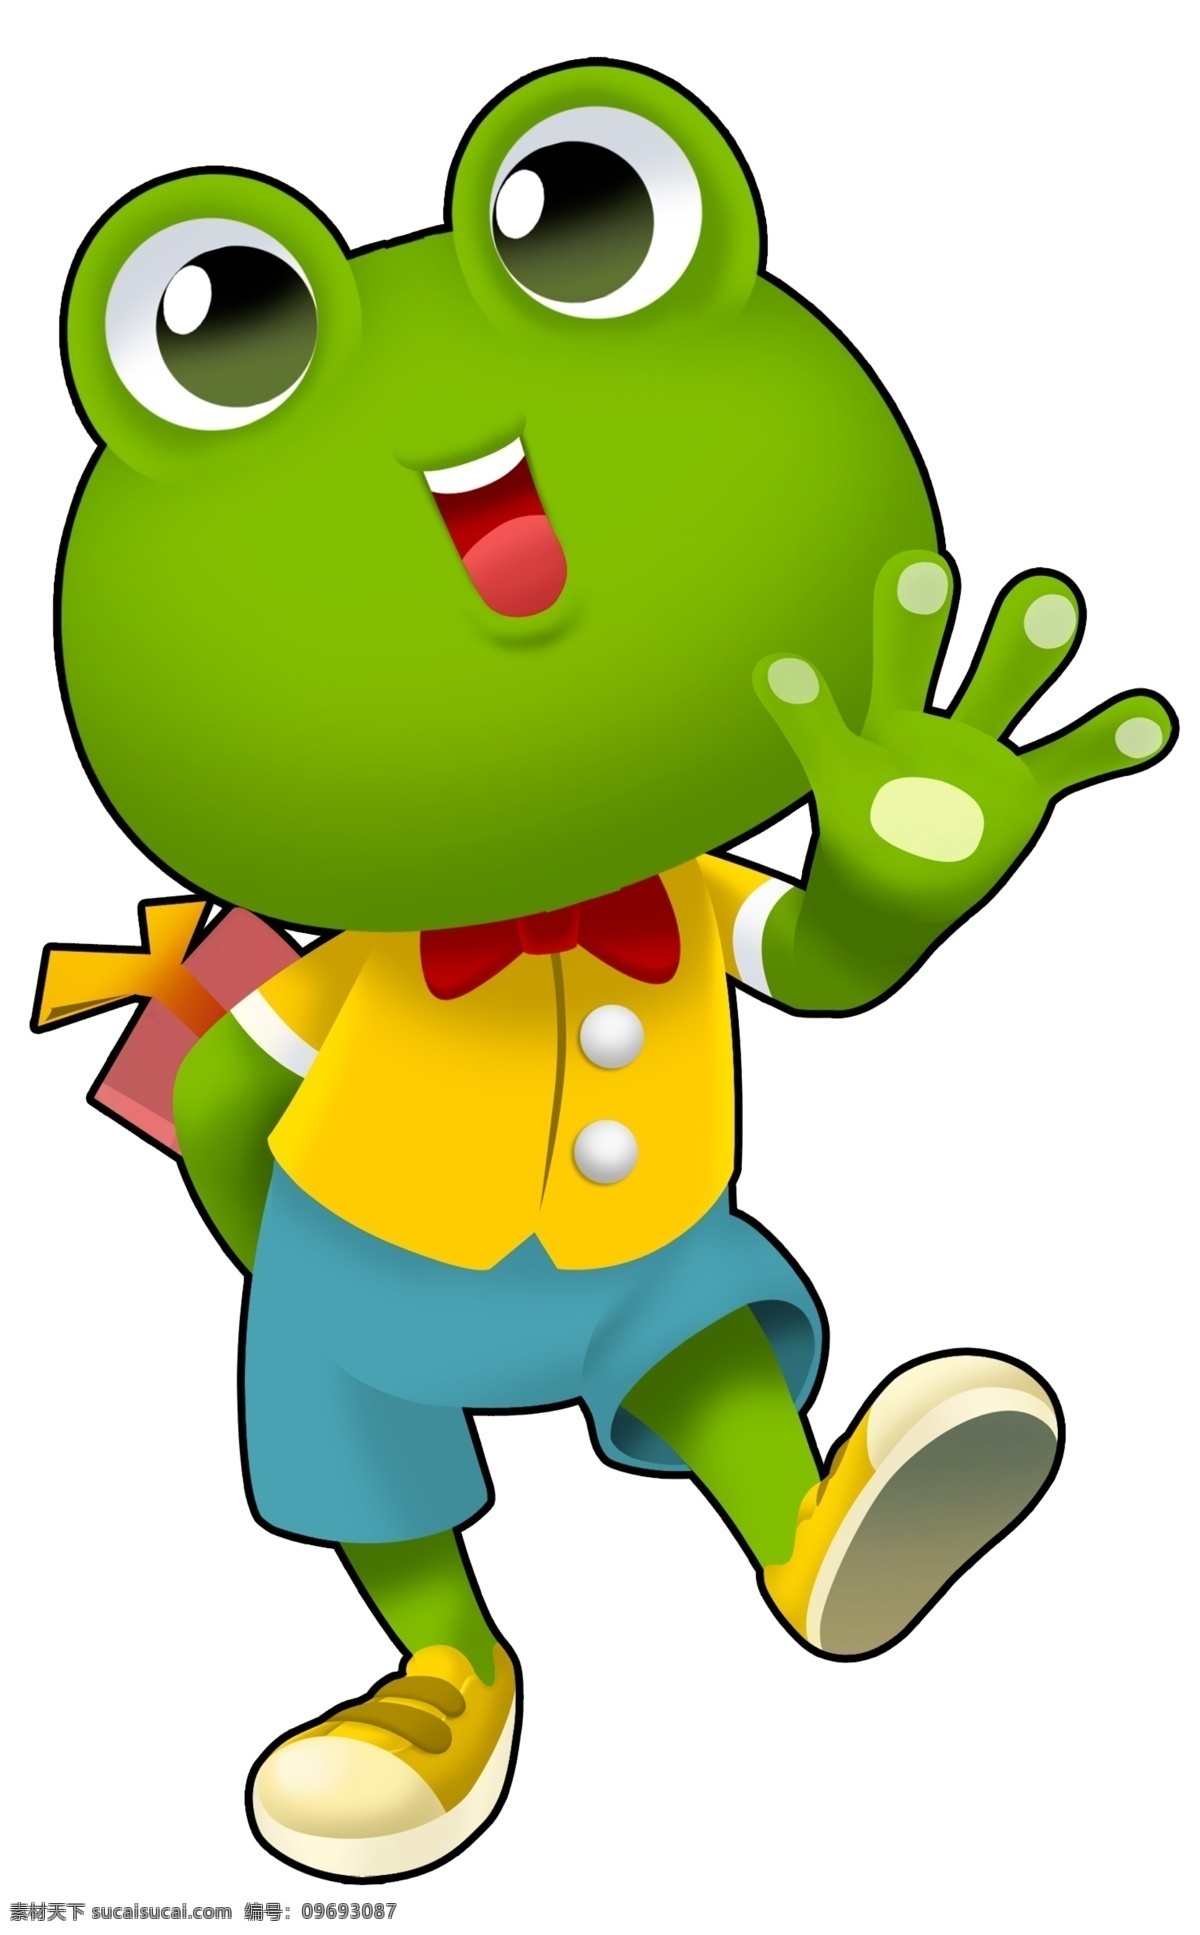 荷叶蛙标志 荷叶蛙 荷叶伞 青蛙 可爱卡通 卡通动物 动漫卡通 青蛙表情